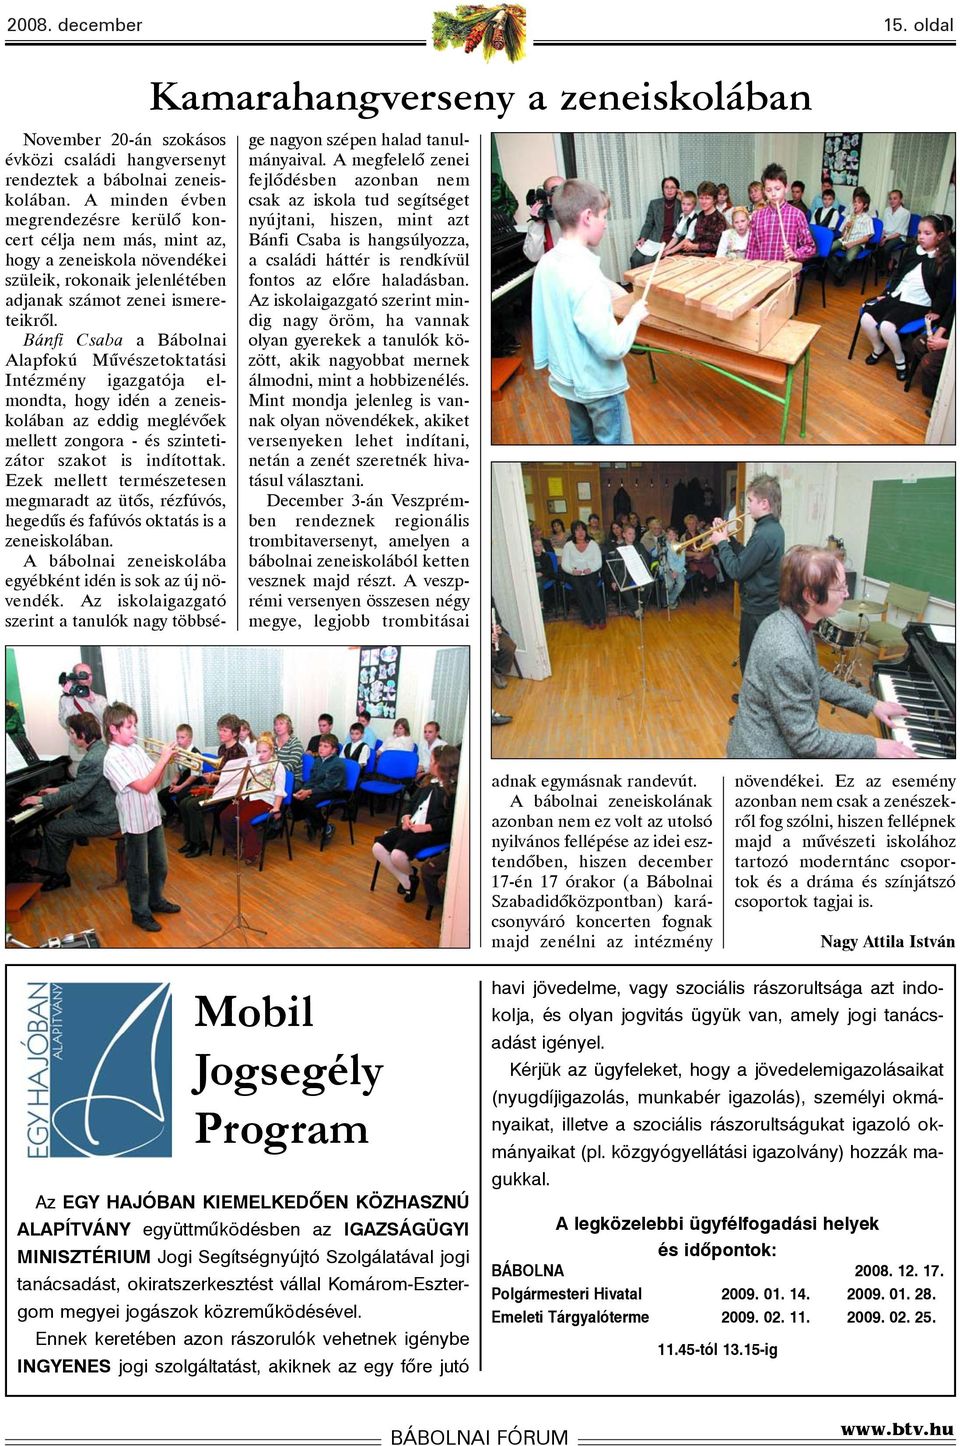 Bánfi Csaba a Bábolnai Alapfokú Mûvészetoktatási Intézmény igazgatója elmondta, hogy idén a zeneiskolában az eddig meglévõek mellett zongora - és szintetizátor szakot is indítottak.